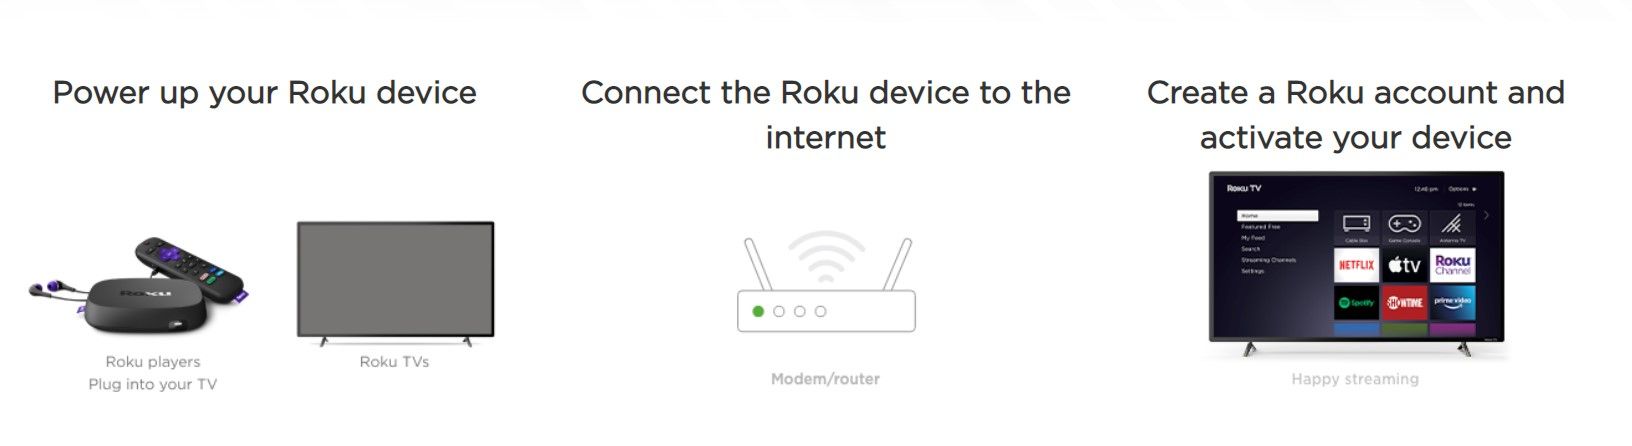 How to use Roku